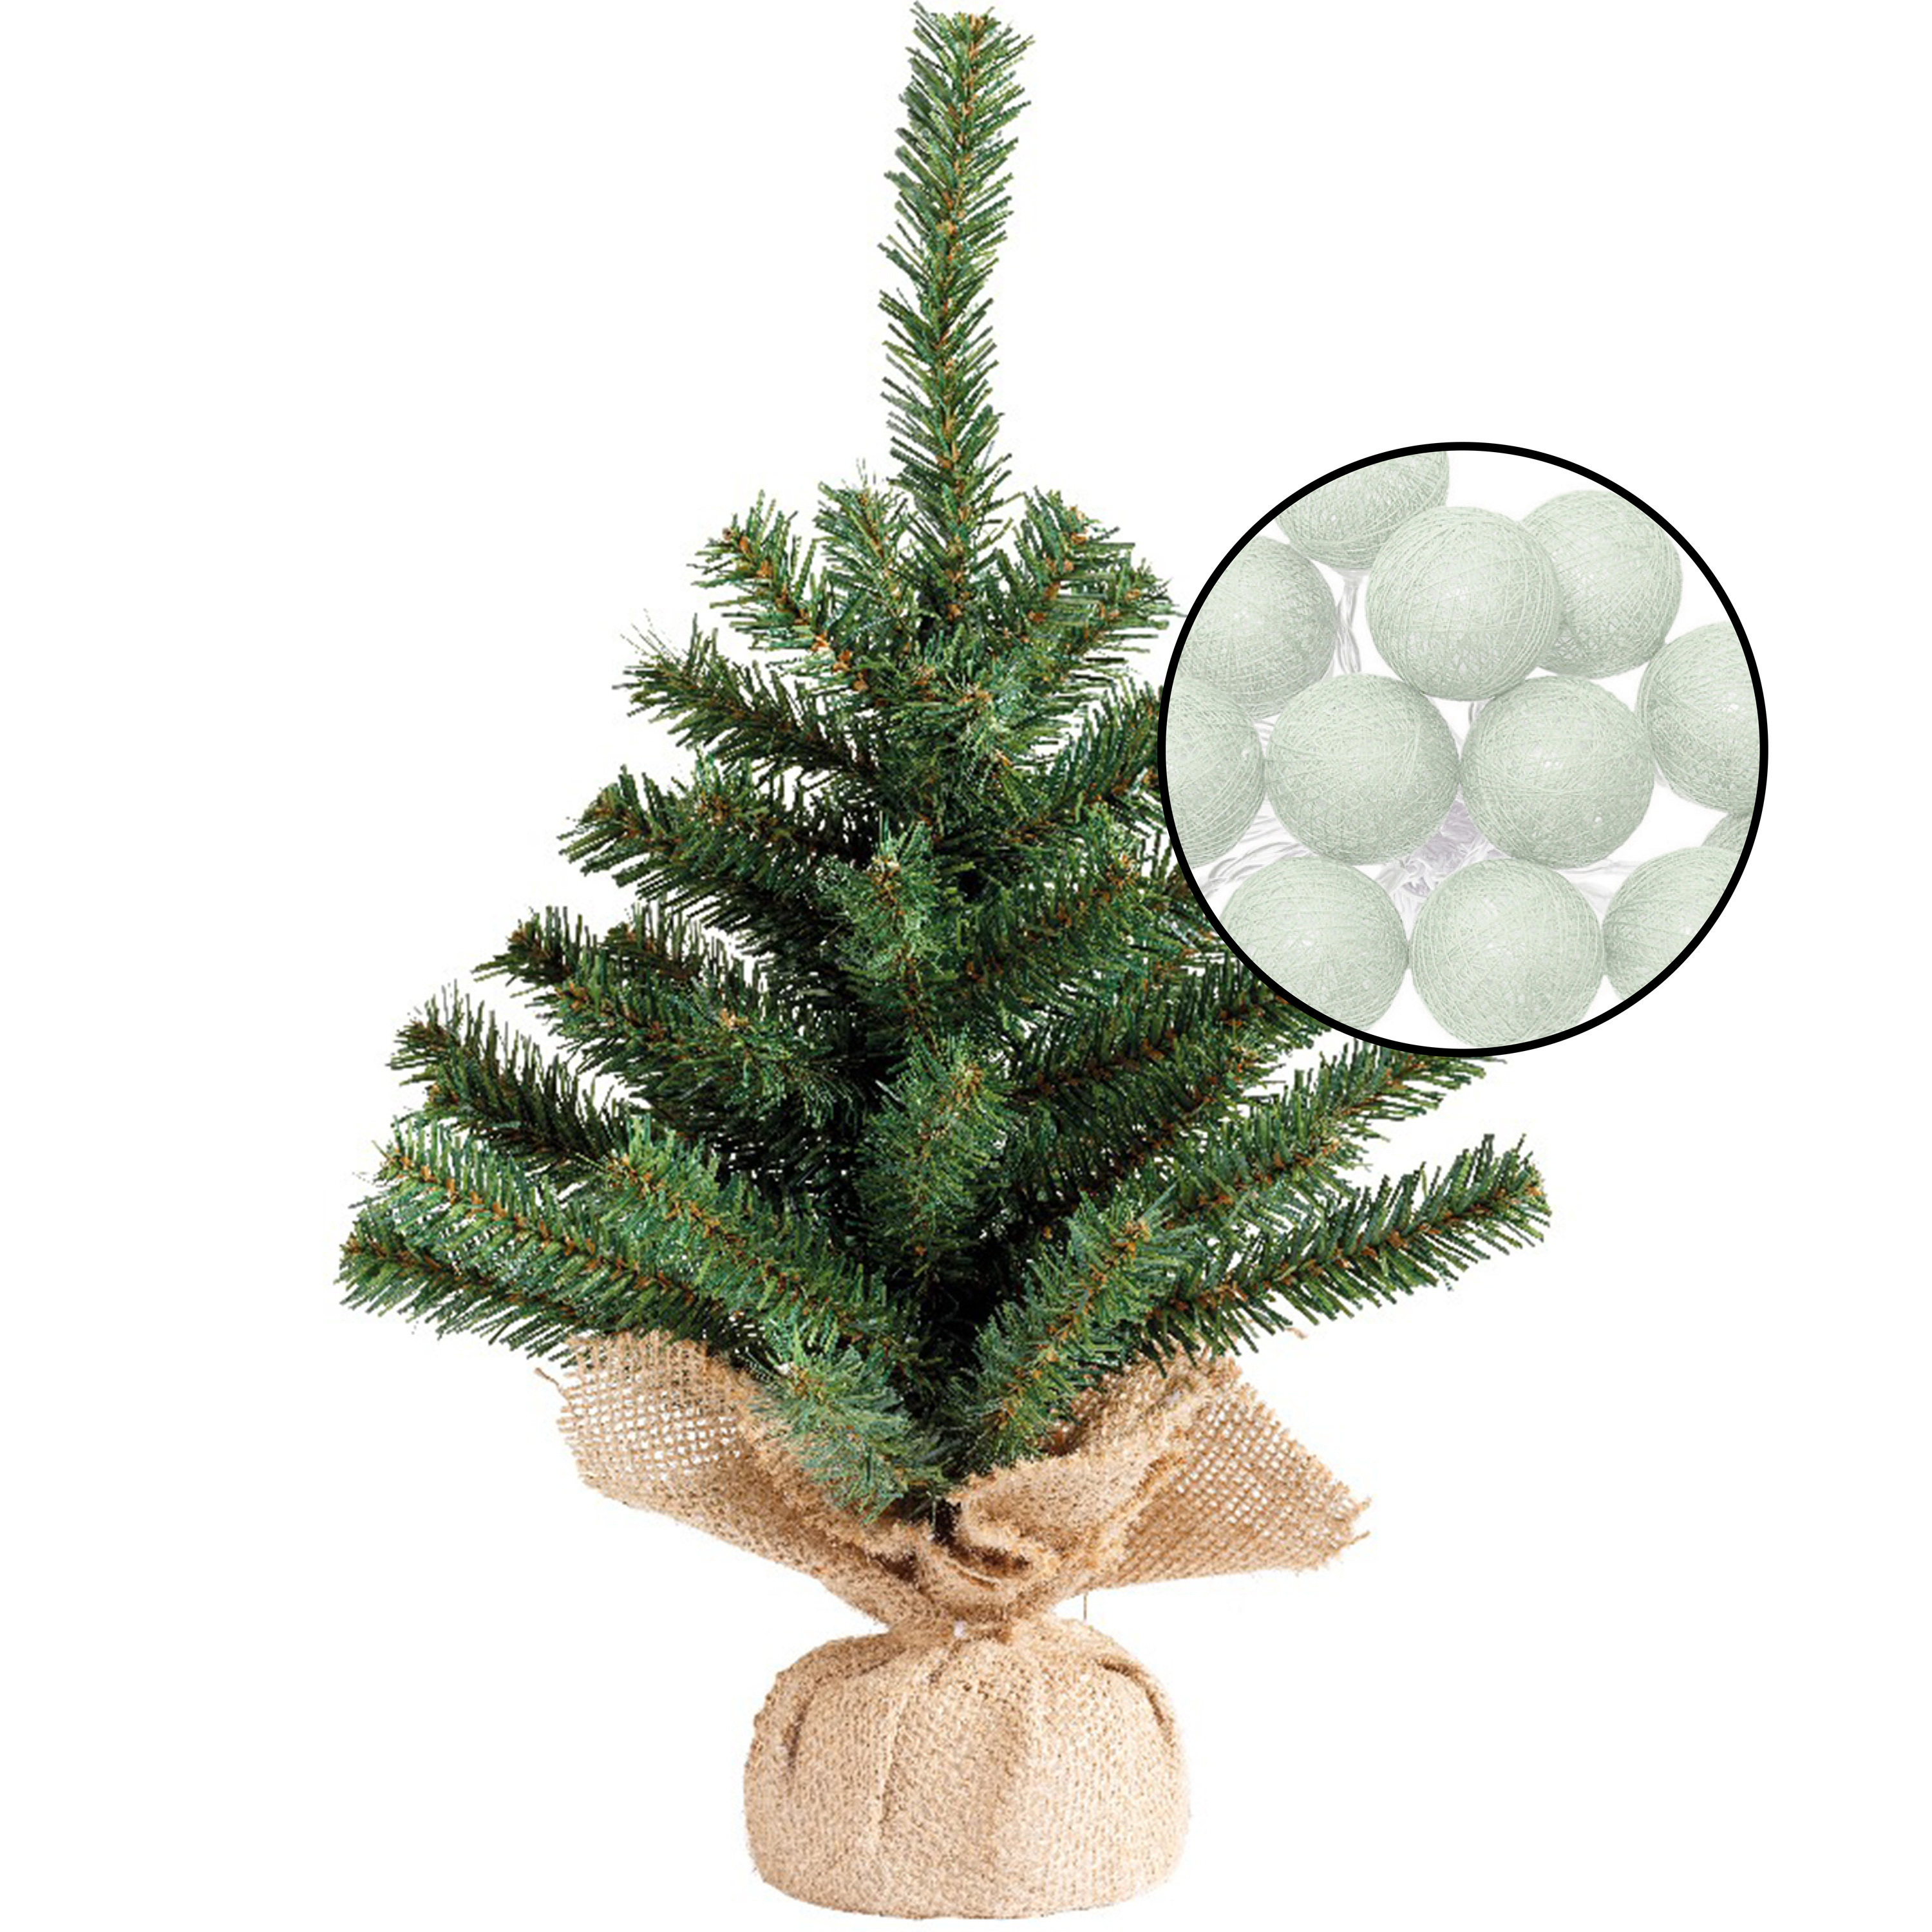 Mini kunst kerstboom groen met verlichting in jute zak H45 cm lichtgroen